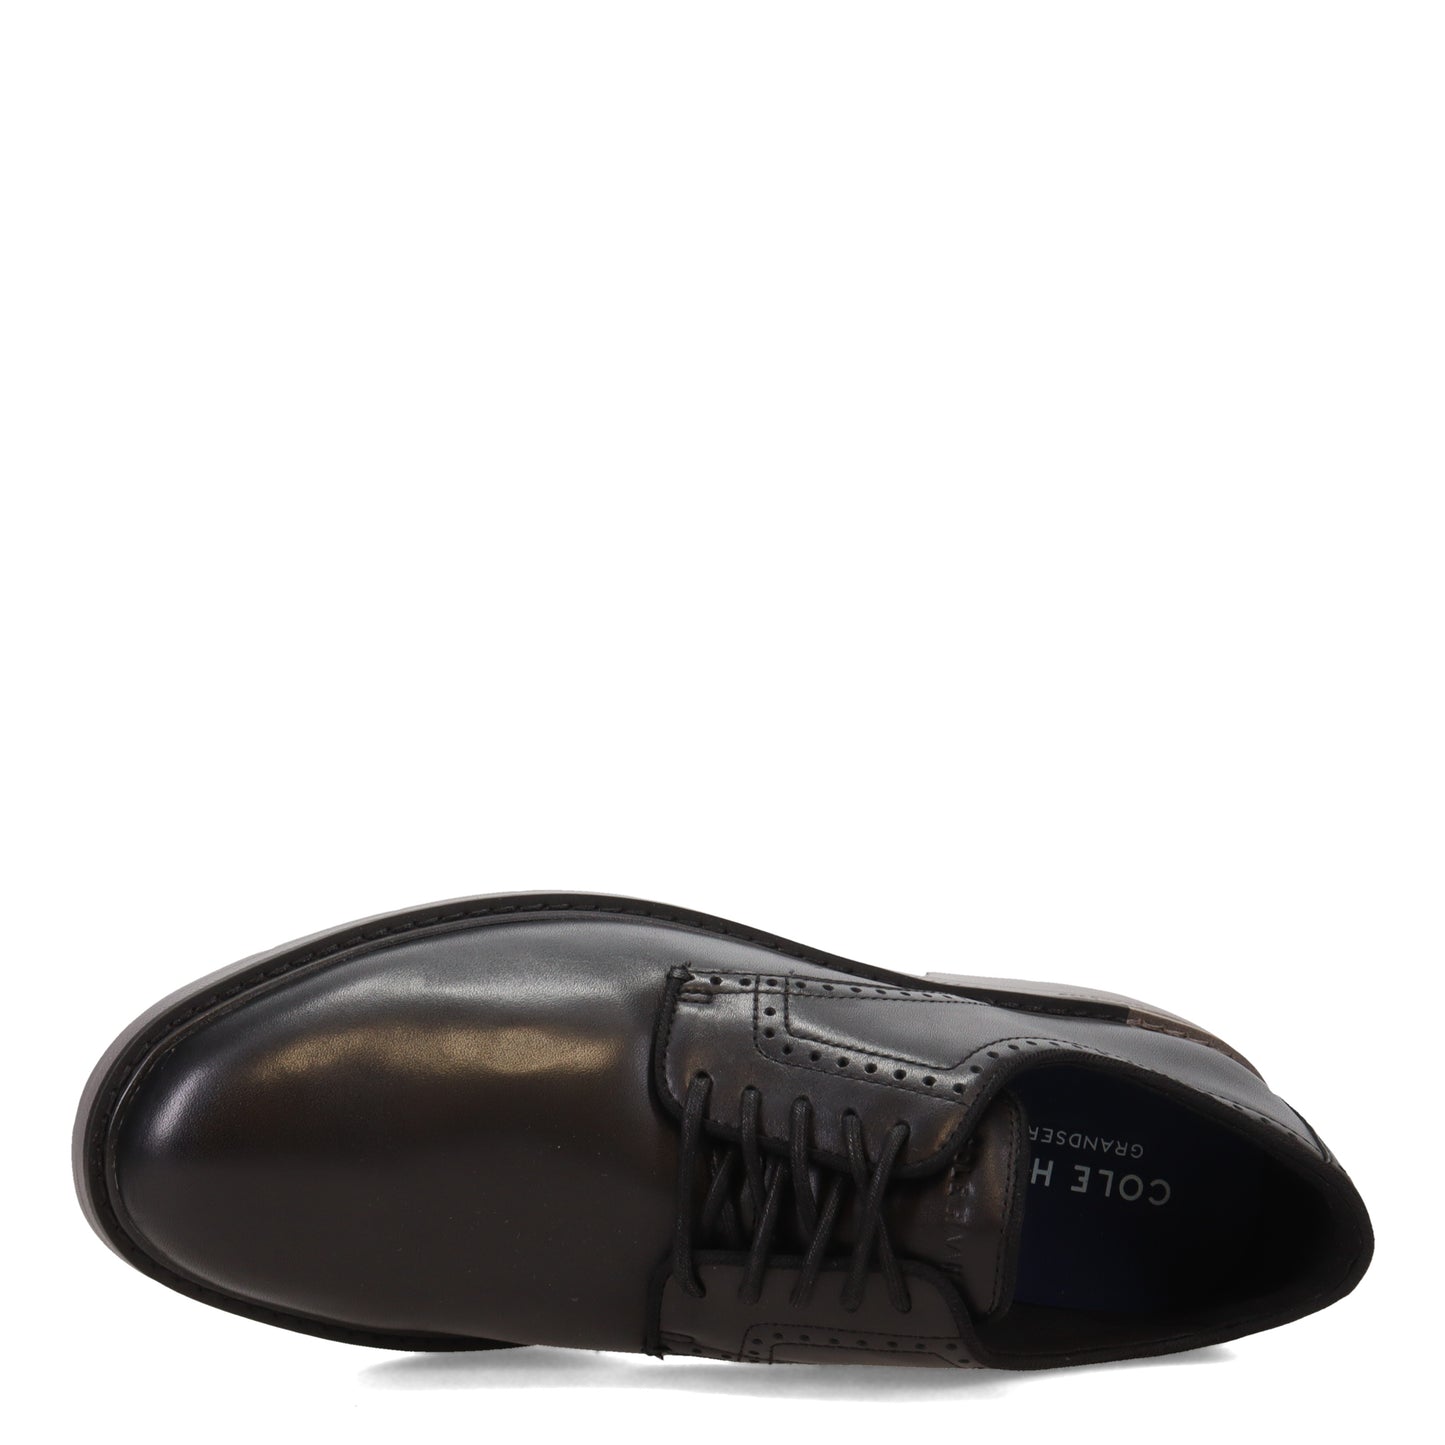 Peltz Shoes  Men's Cole Haan Go-To Plain Toe Oxford BLACK GRAY C34123